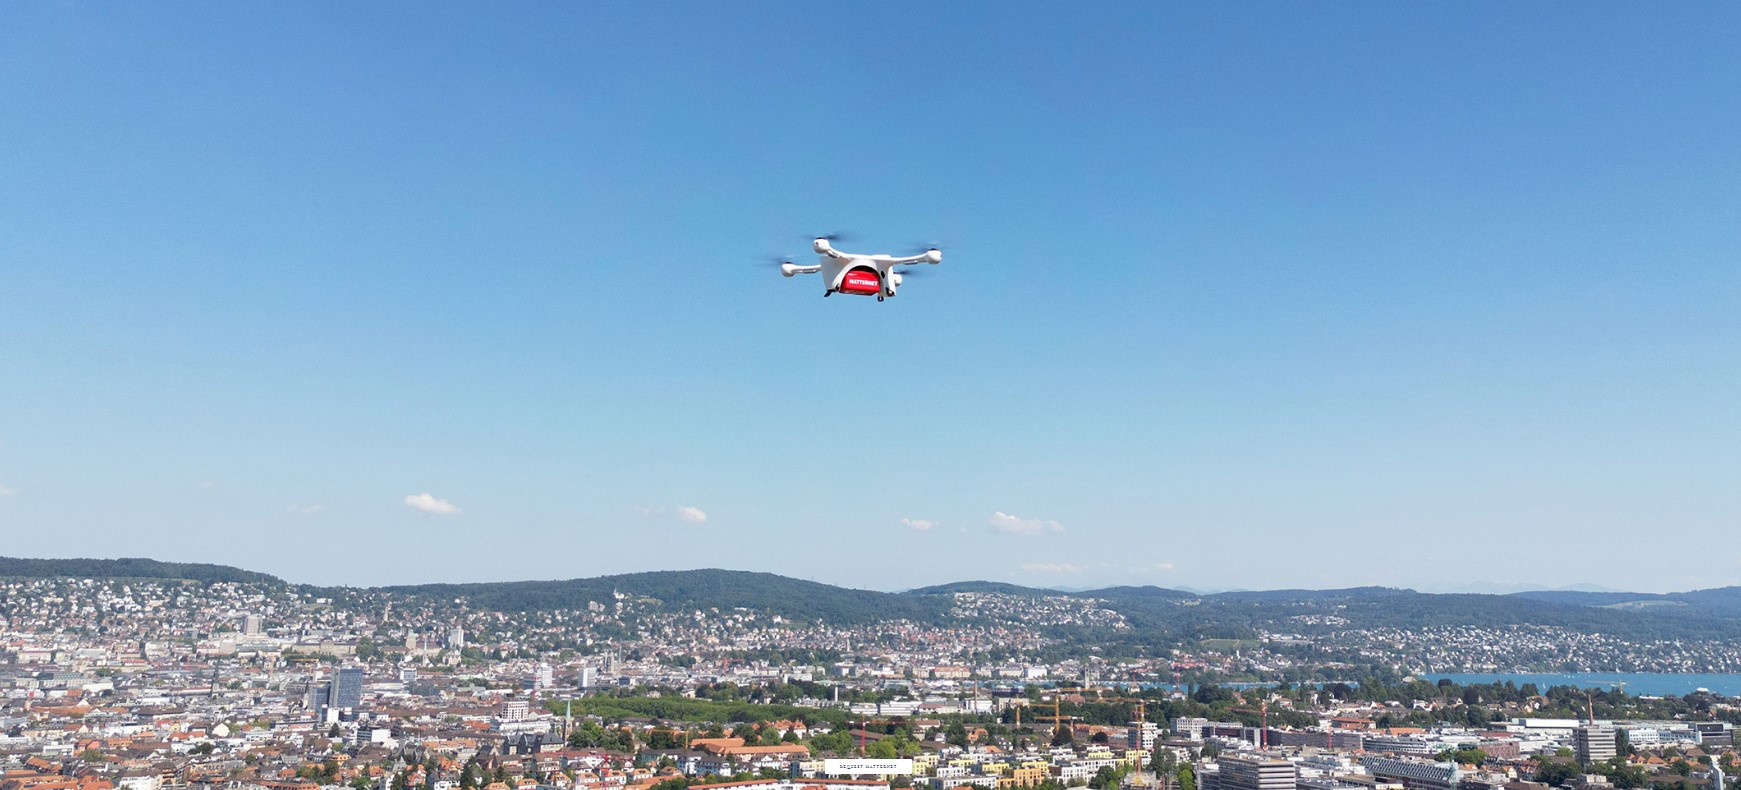 Με ελληνική υπογραφή η μεγαλύτερη διαδρομή drone delivery στον κόσμο © Matternet